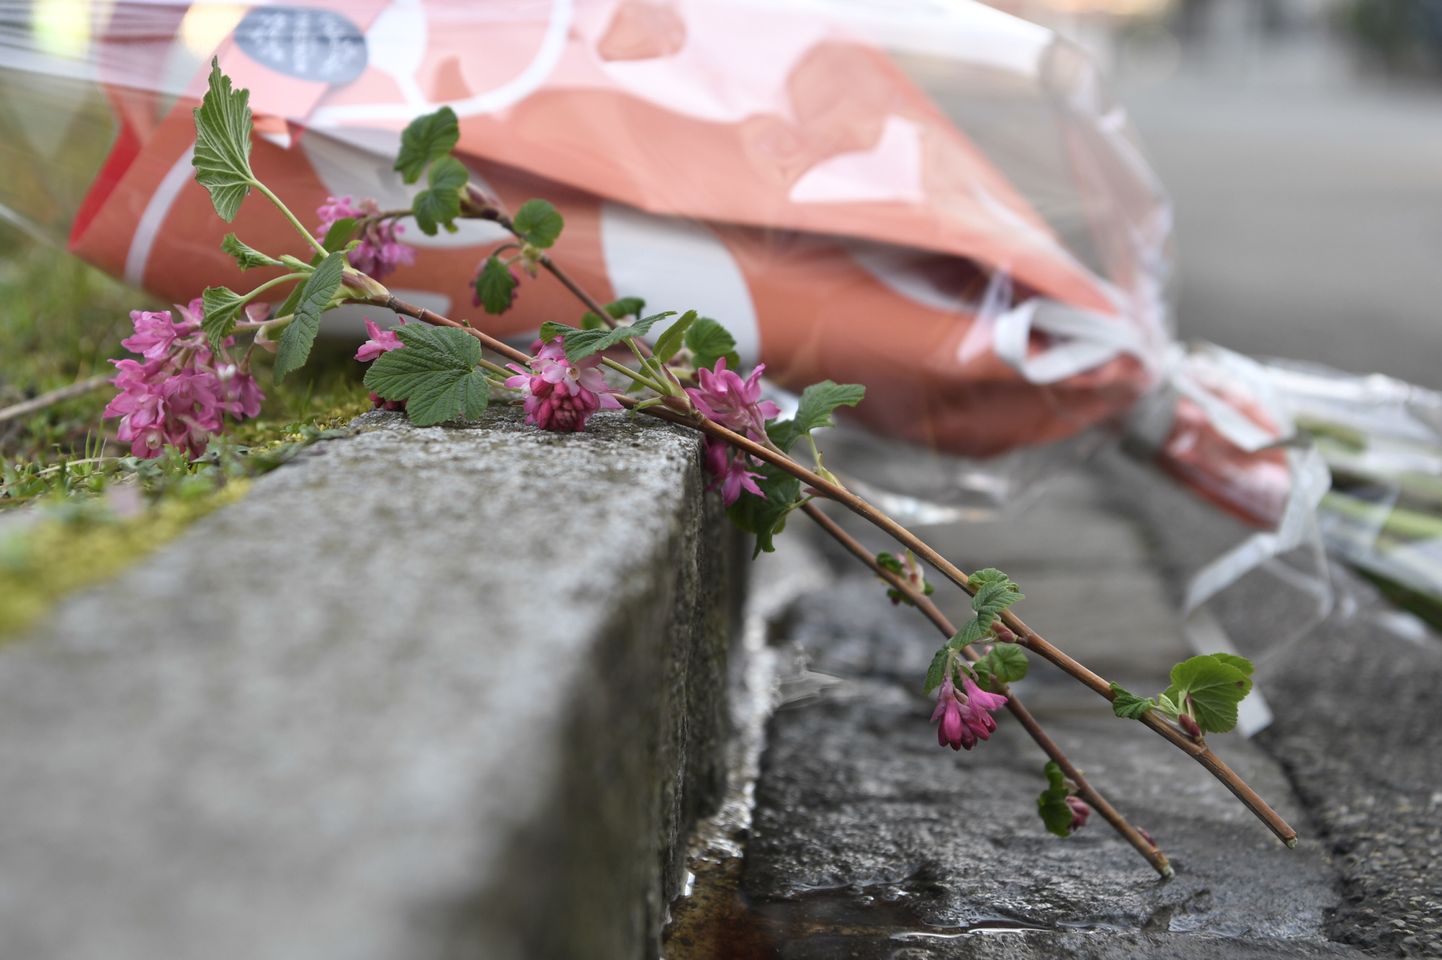 Bāzelē nodurtā septiņgadīgā zēna piemiņai noliktie ziedi.